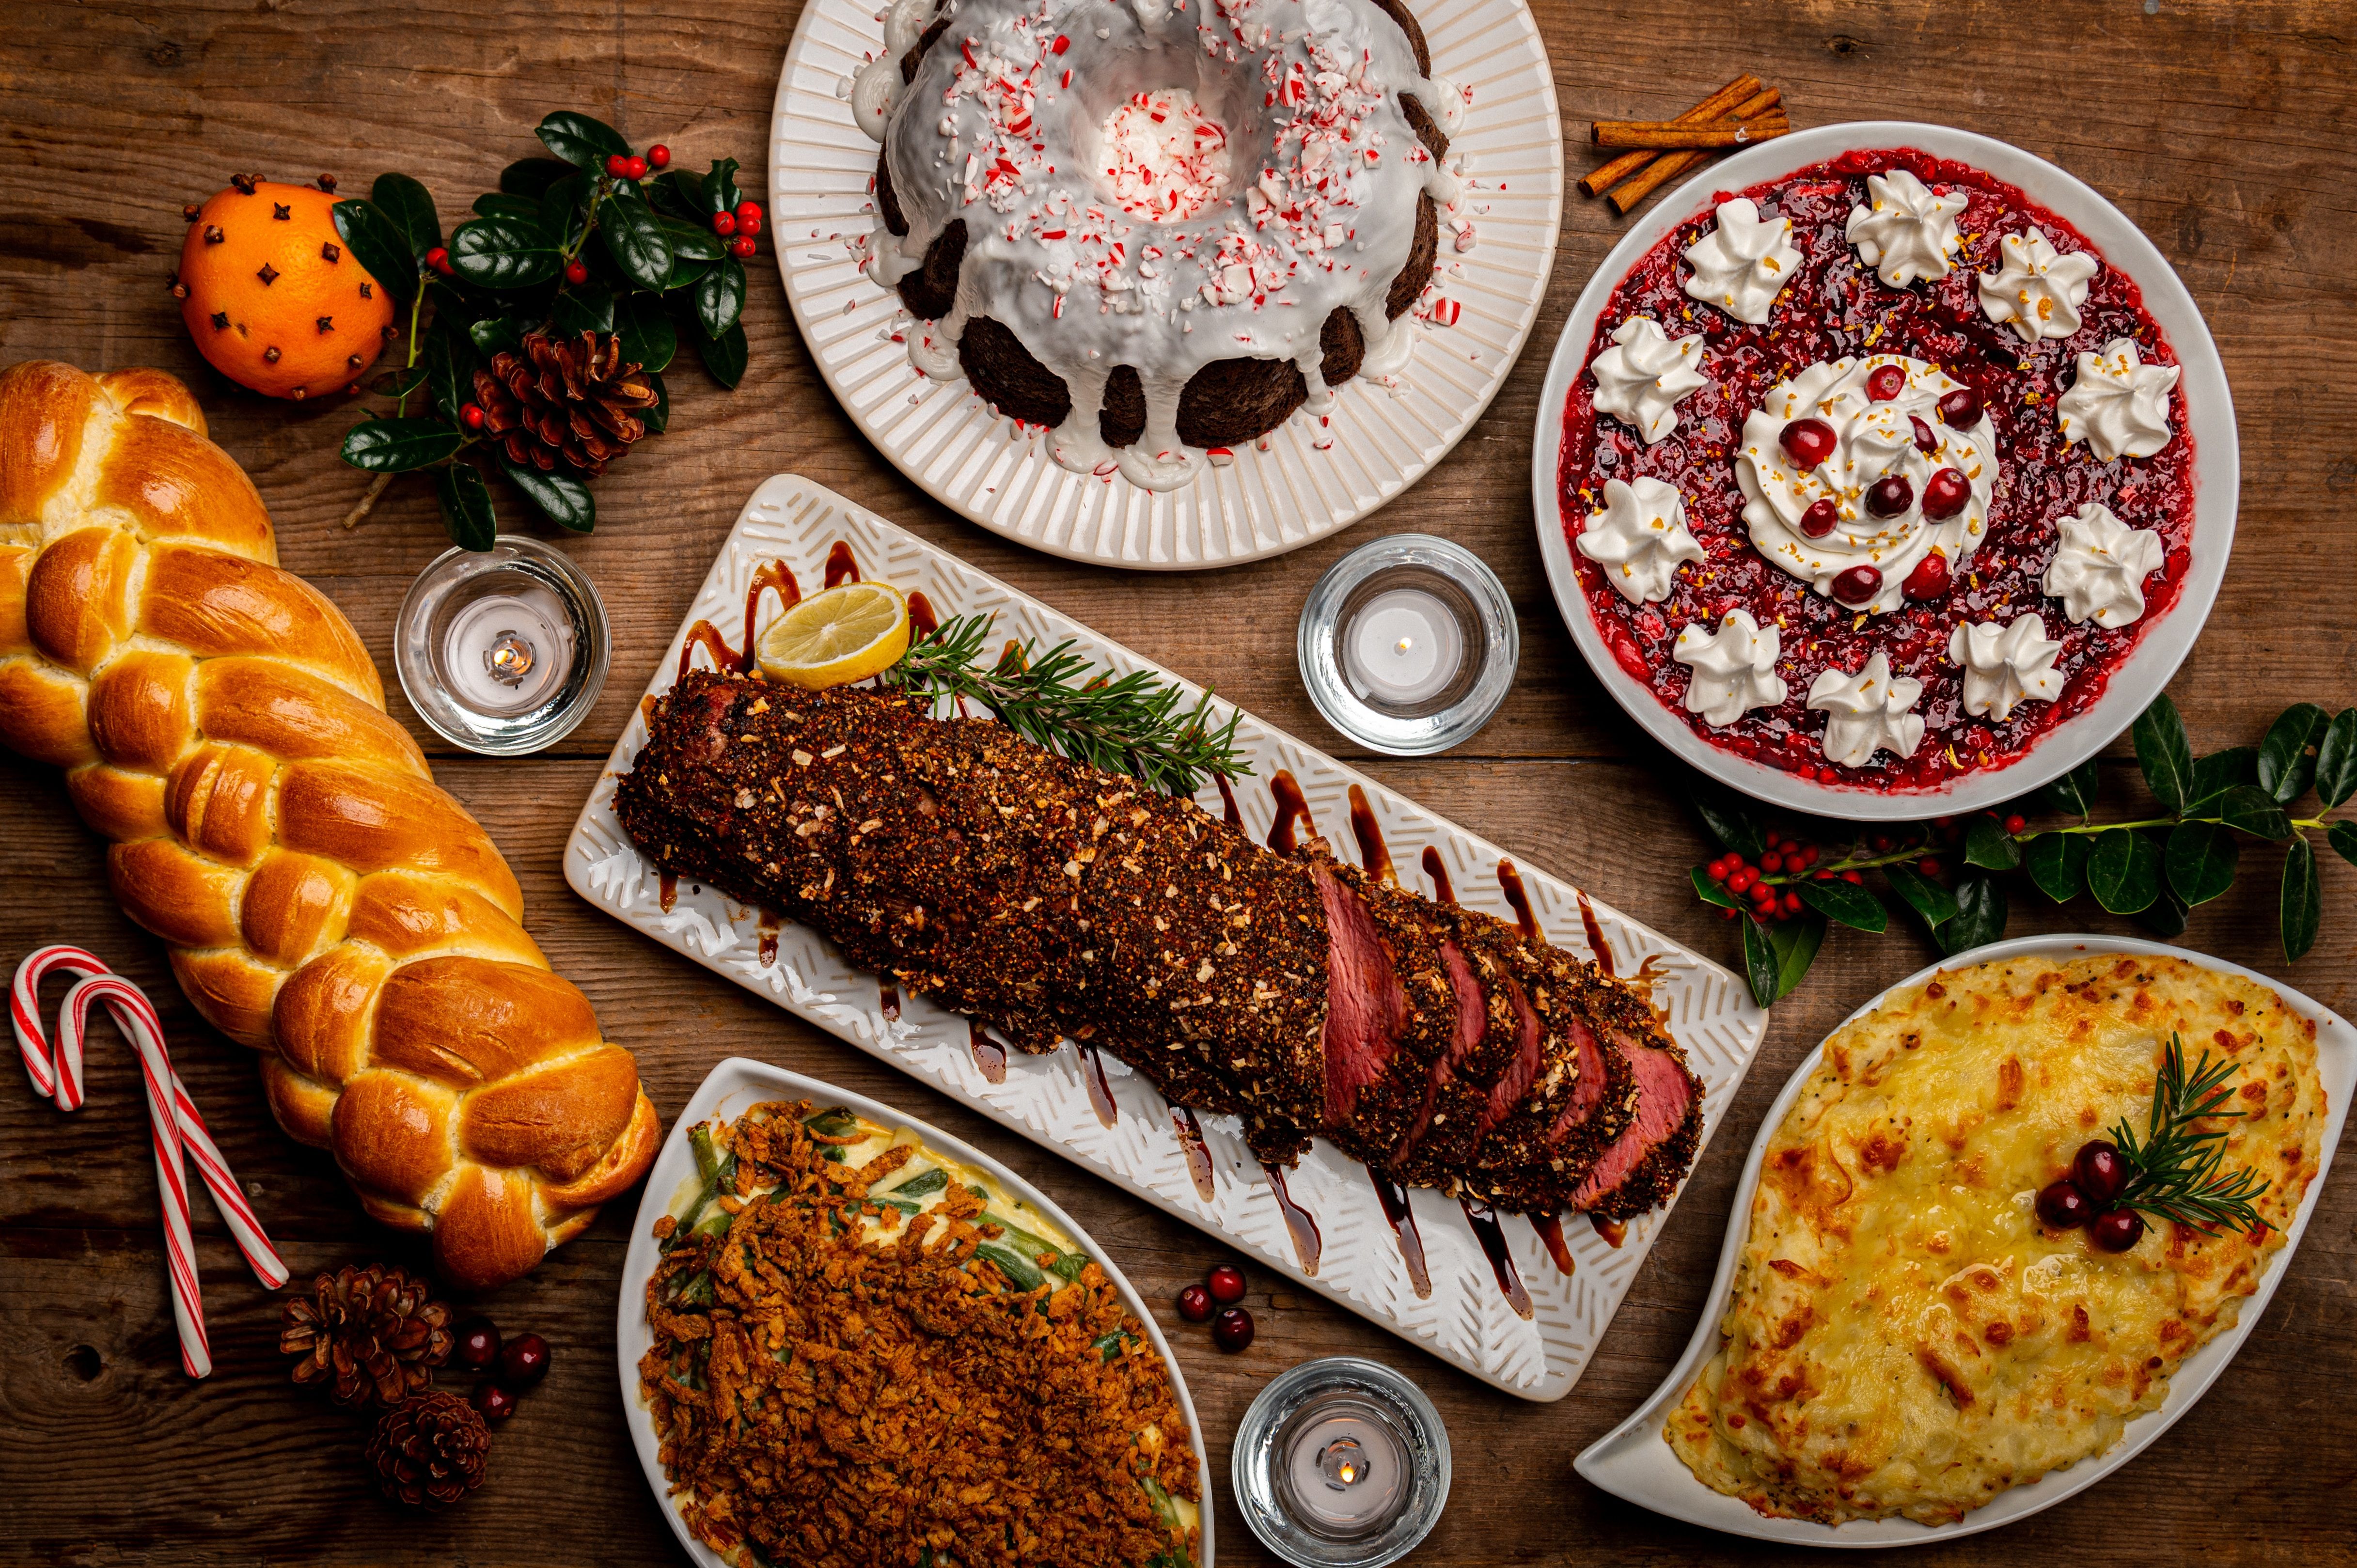 Що приготувати на новорічний стіл - підбірка смачних святкових рецептів - Новини Смачно